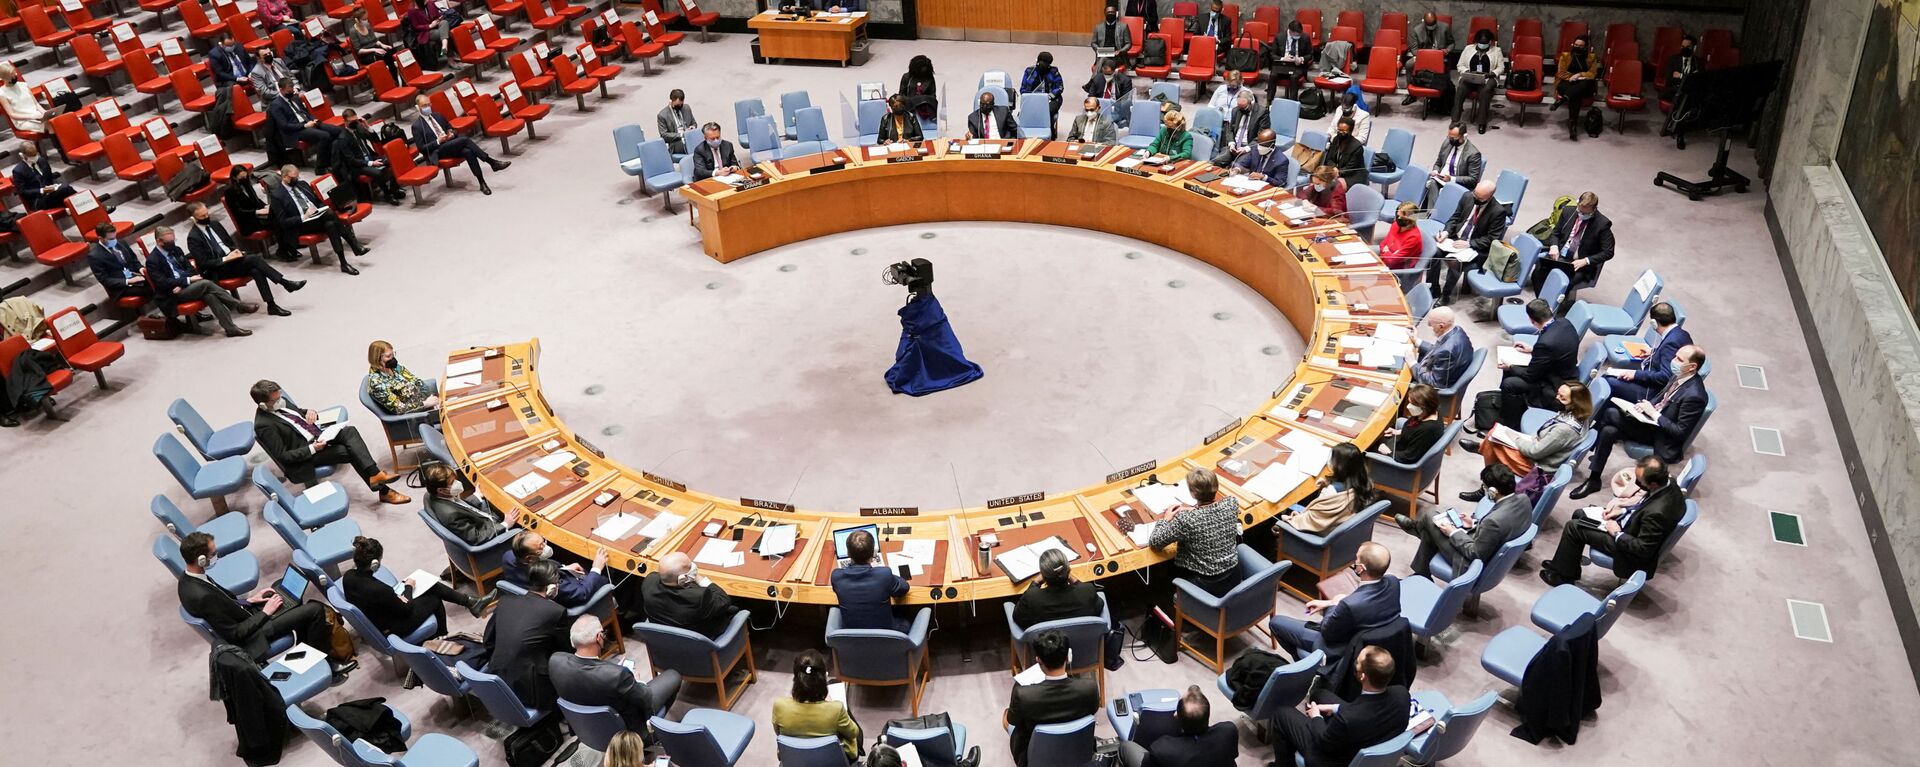  اجتماع مجلس الأمن التابع للأمم المتحدة بعد أن اعترفت روسيا بمنطقتين منفصلتين في شرق أوكرانيا ككيانين مستقلين، في مدينة نيويورك، الولايات المتحدة 21 فبراير 2022. - سبوتنيك عربي, 1920, 22.04.2022